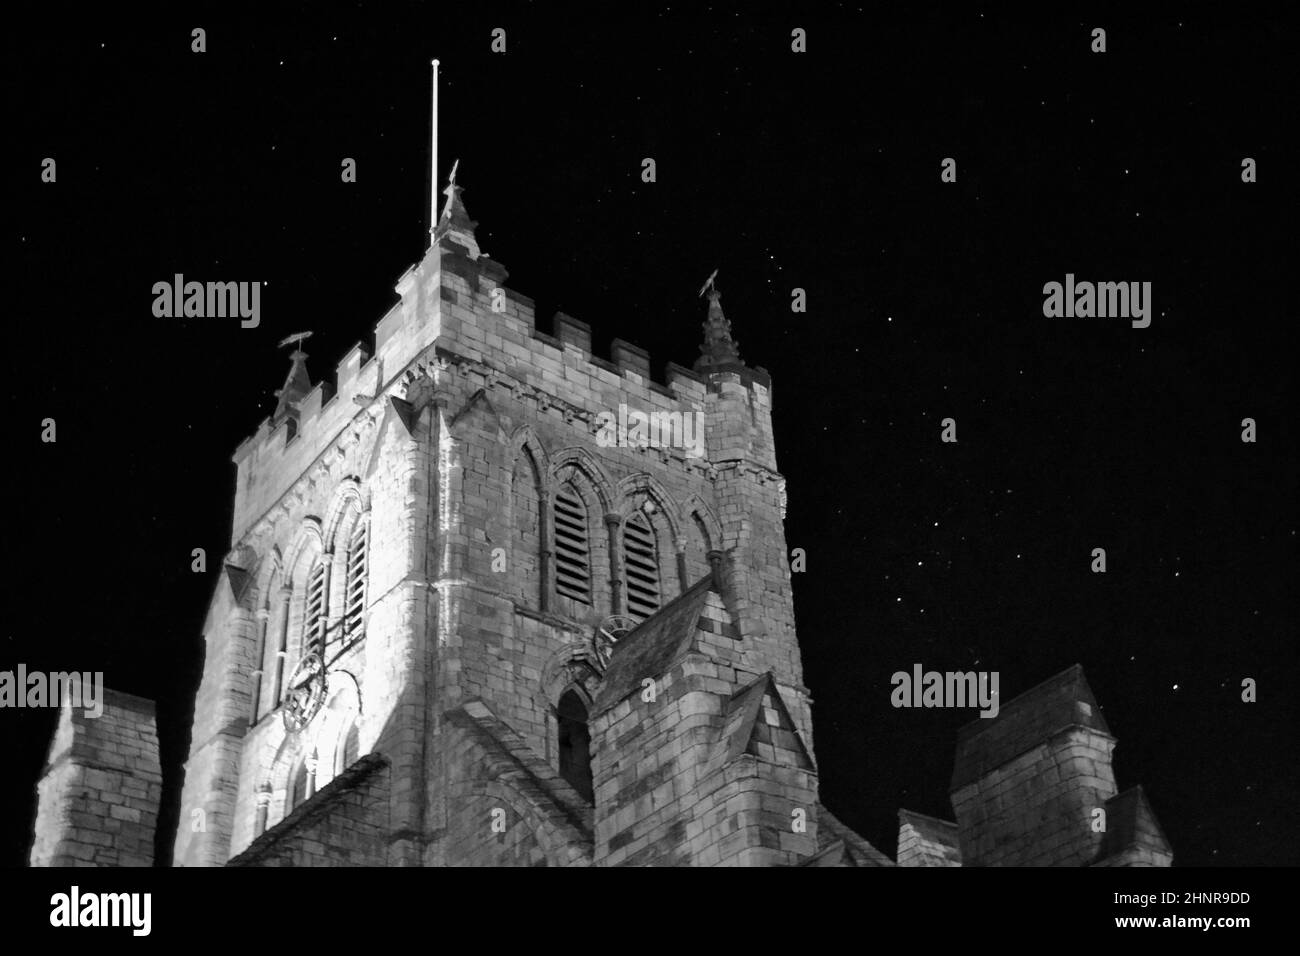 Imagen en blanco y negro de la Iglesia de San Hilda, Hartlepool, Reino Unido, con un impresionante cielo nocturno. Las estrellas brillan incluyendo la constelación de Orión. Foto de stock